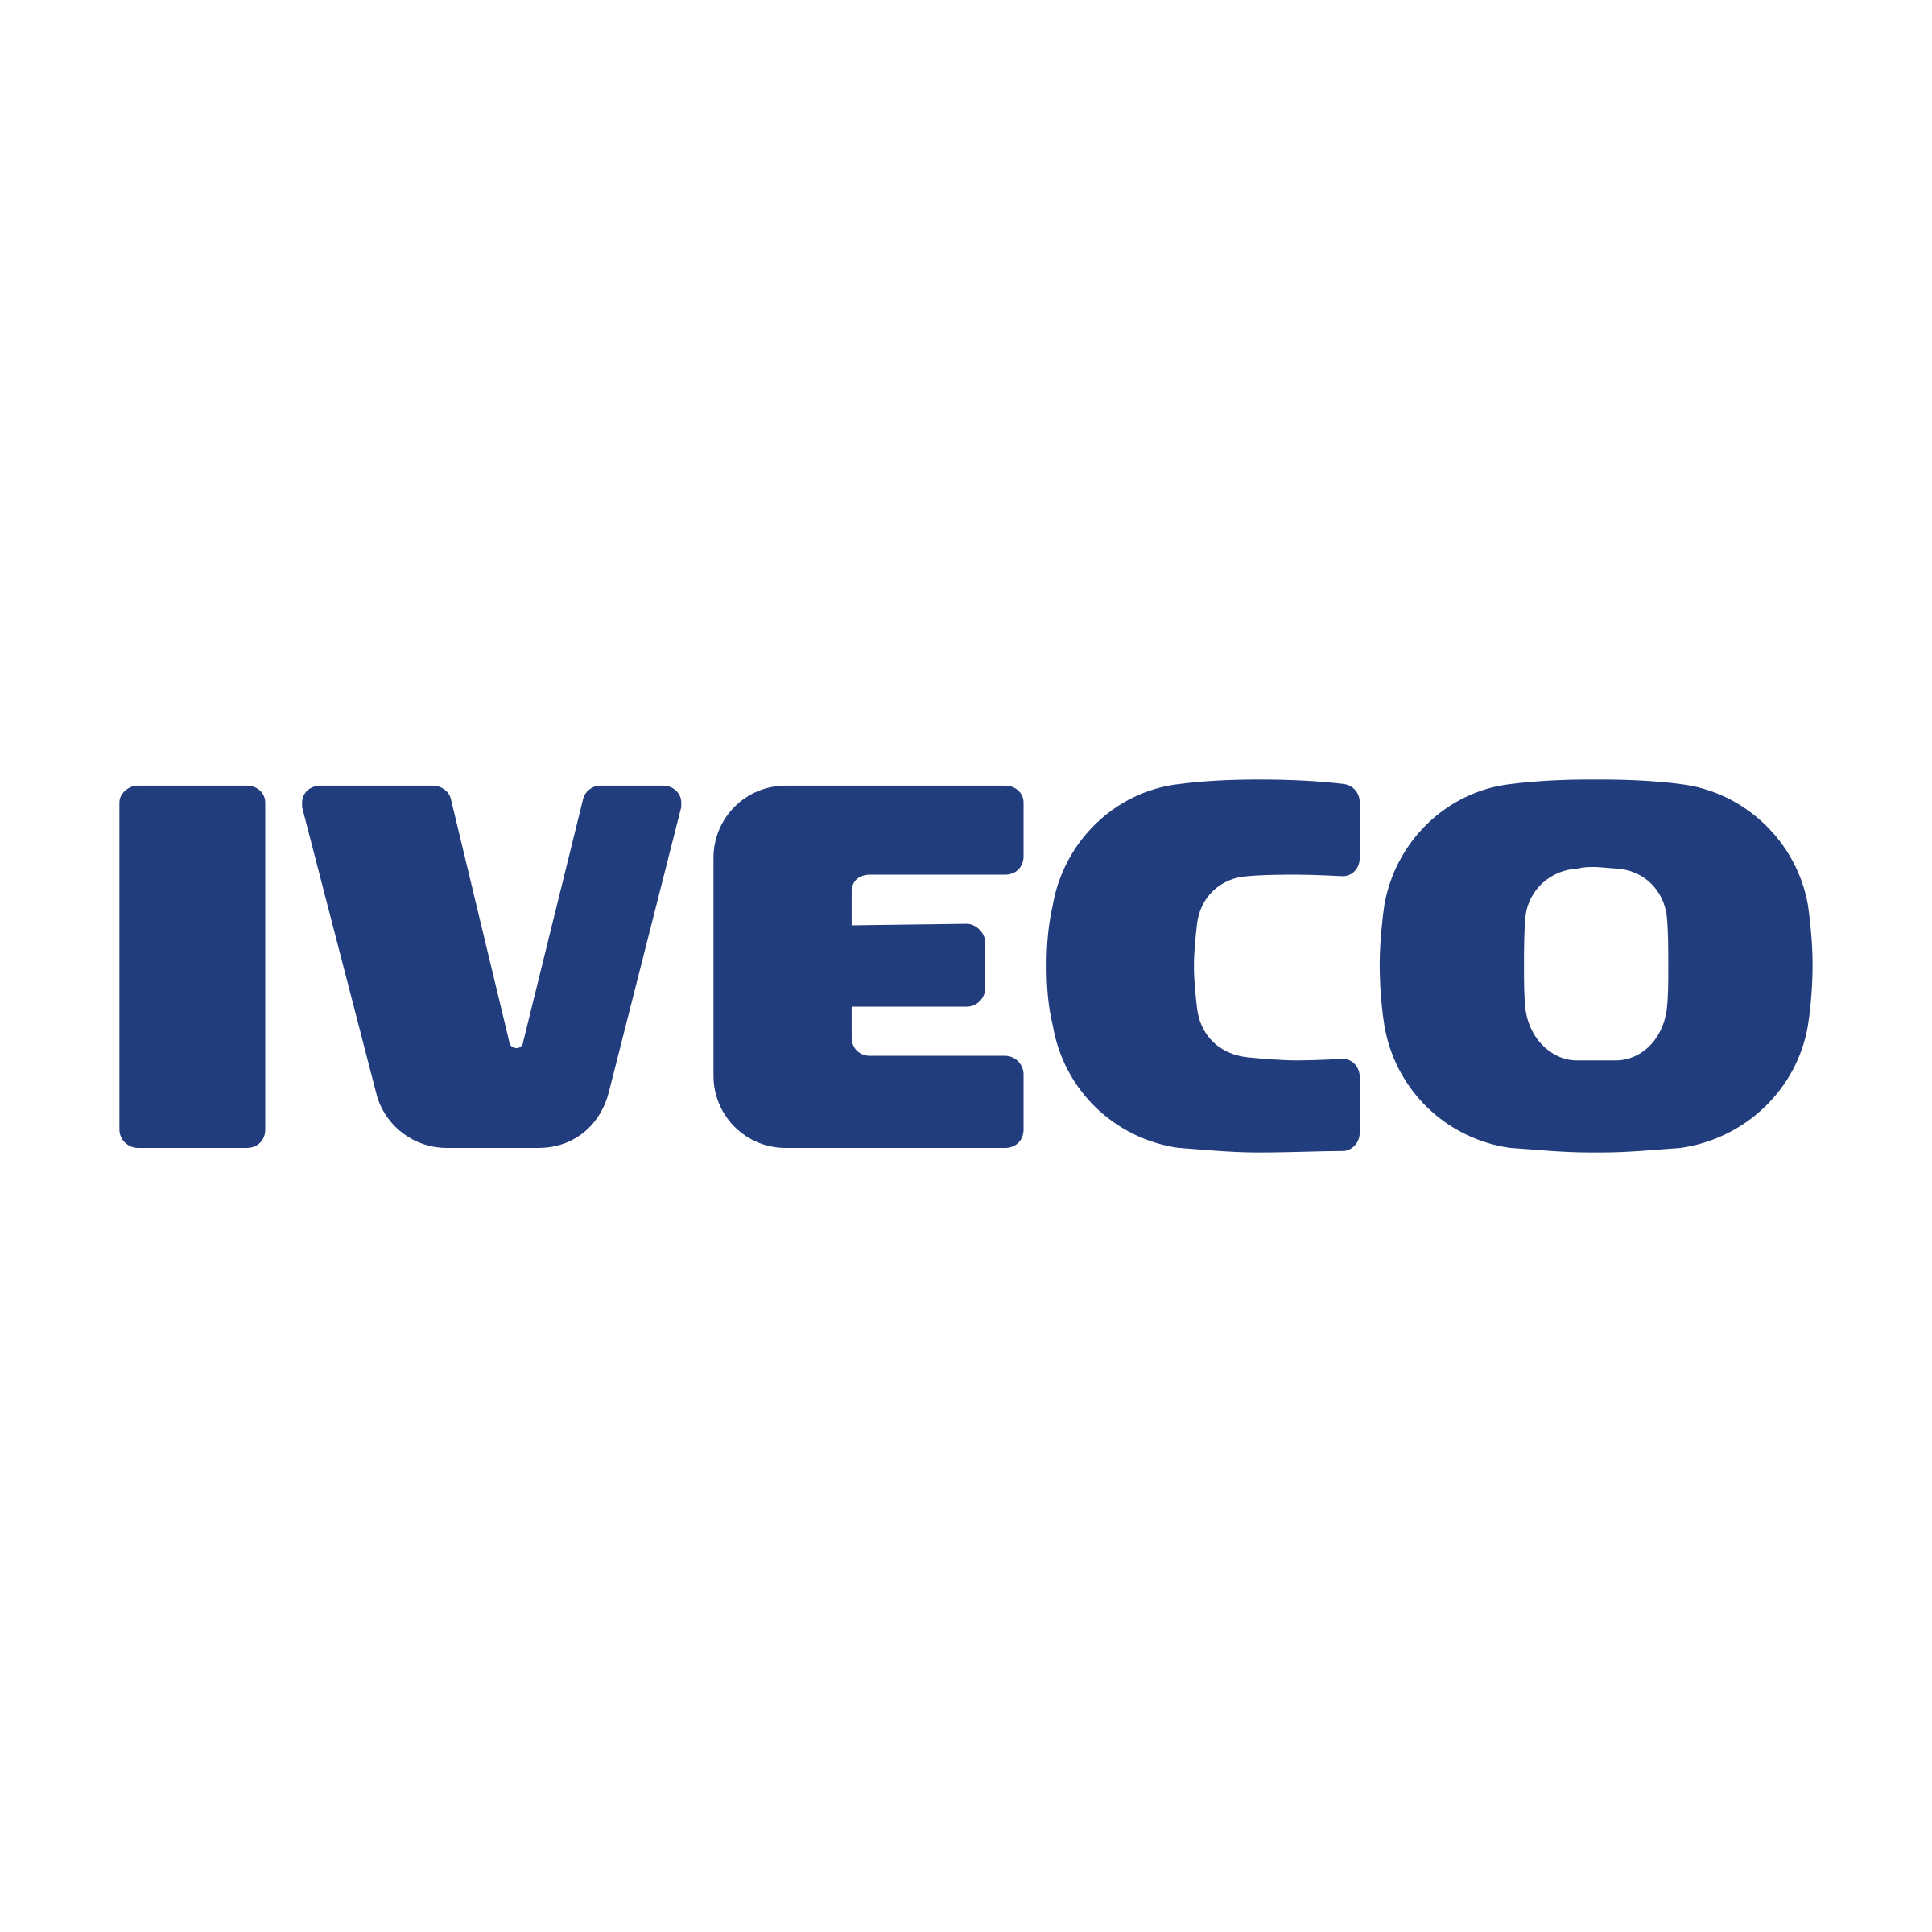 Iveco Brand Logo